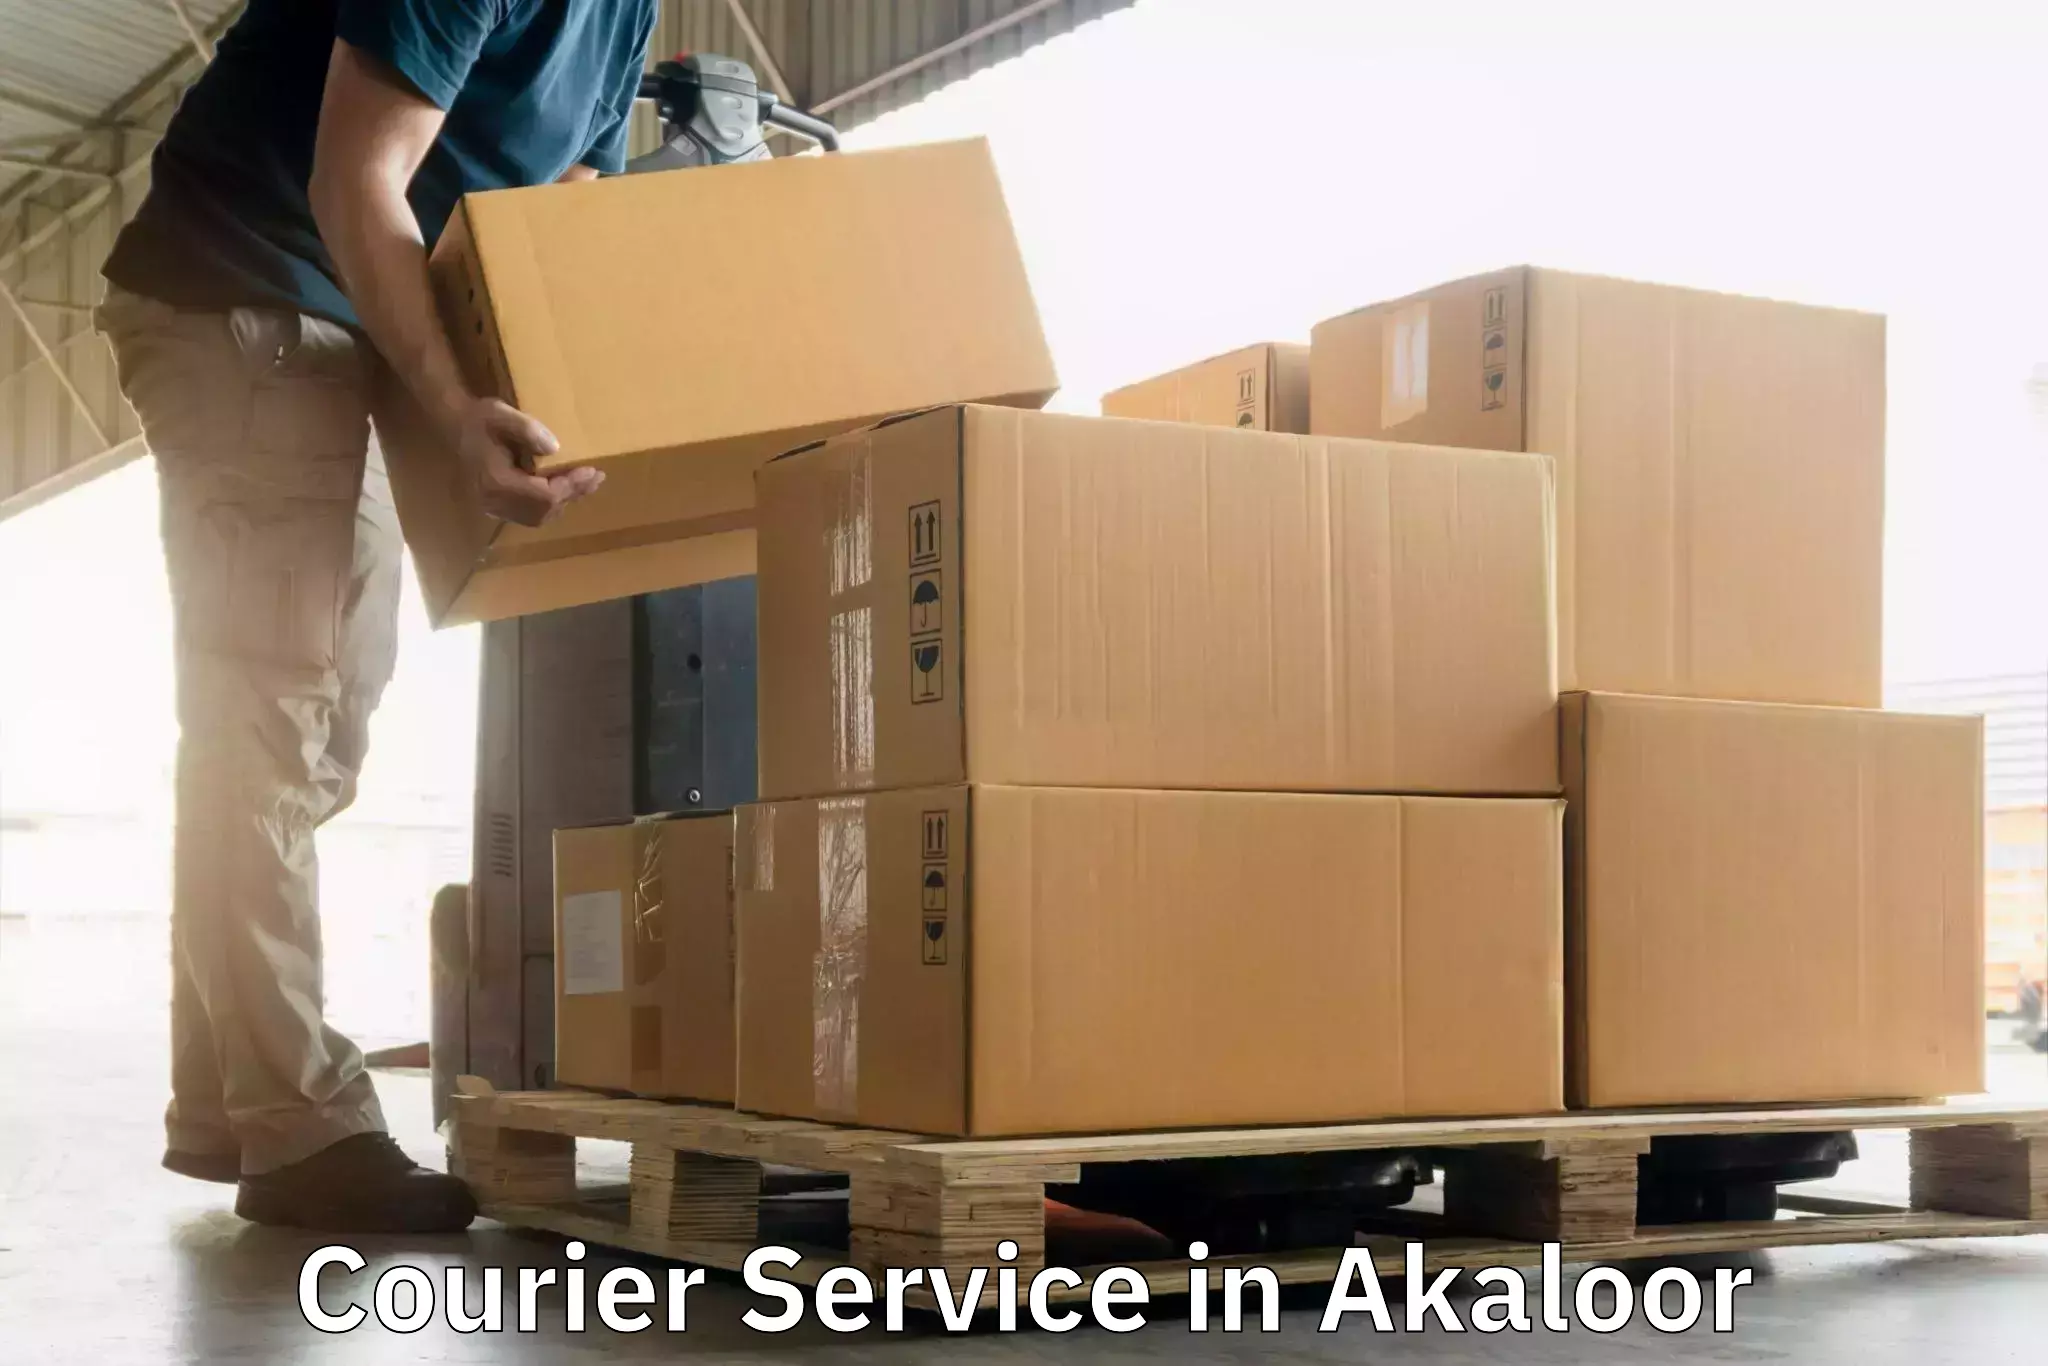 Courier app in Akaloor